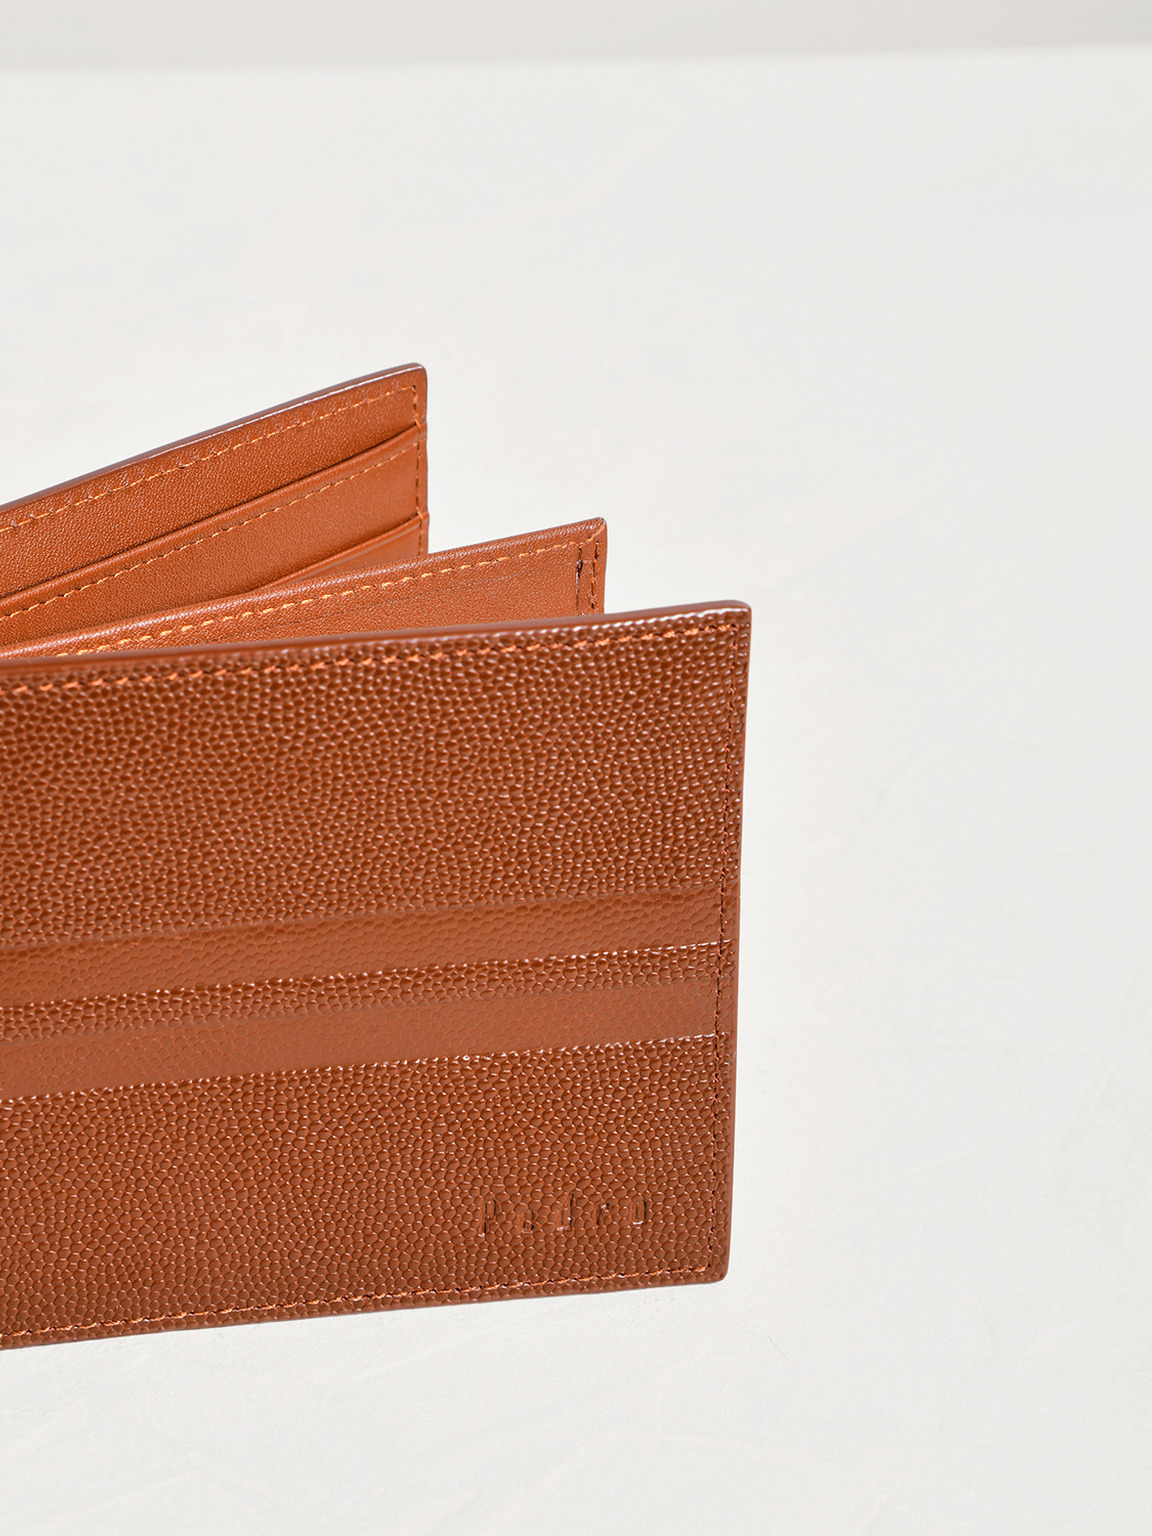 Striped Leather Bi-Fold Flip Wallet, Cognac